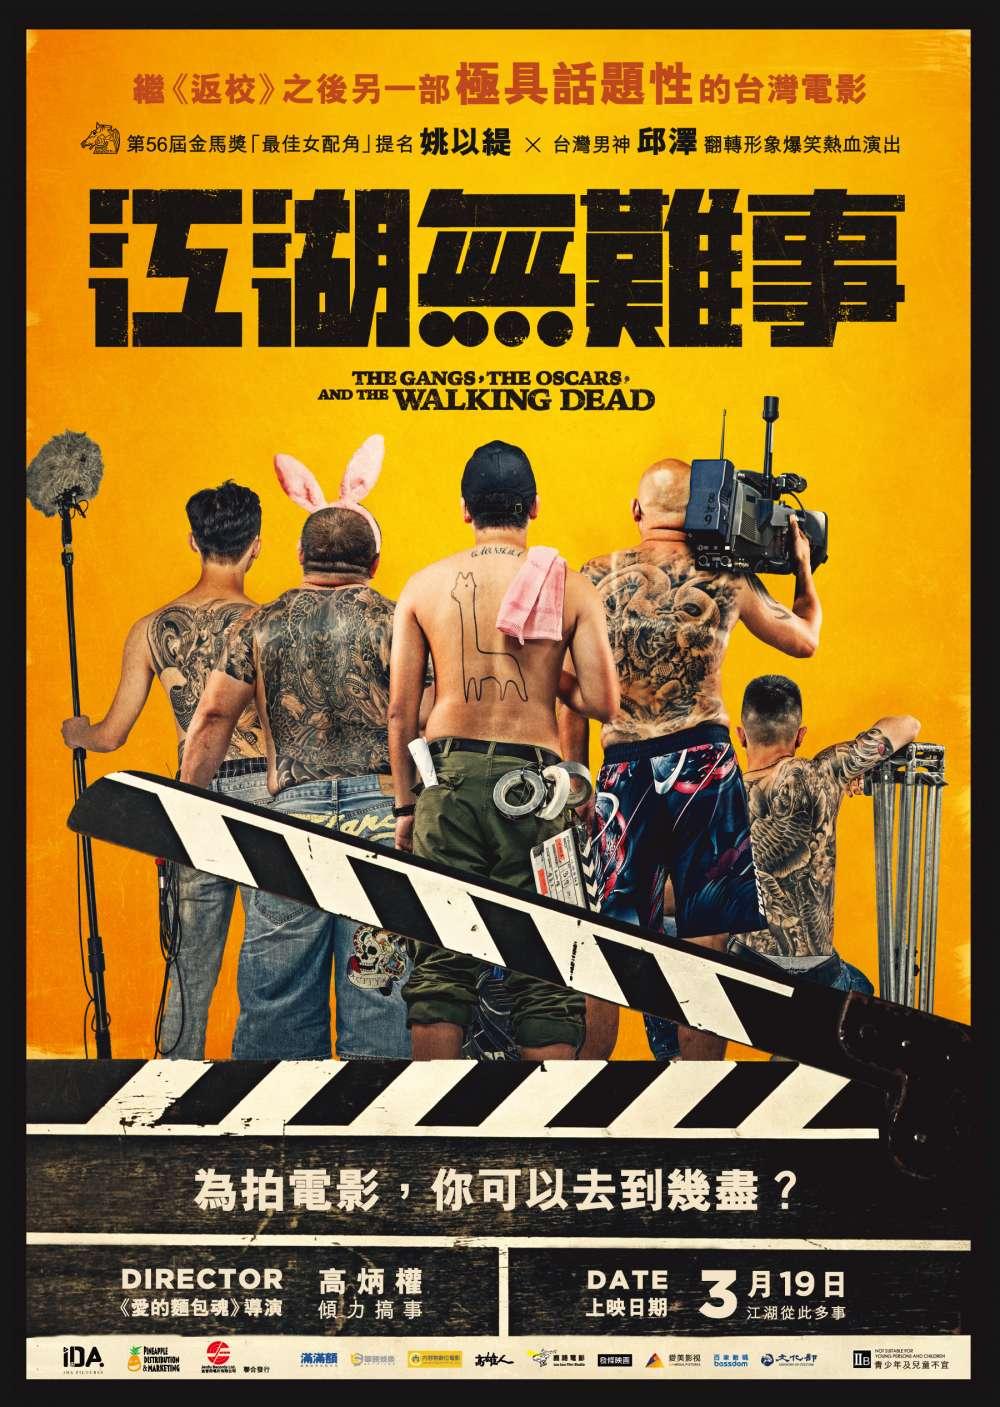 Hong Kong Poster